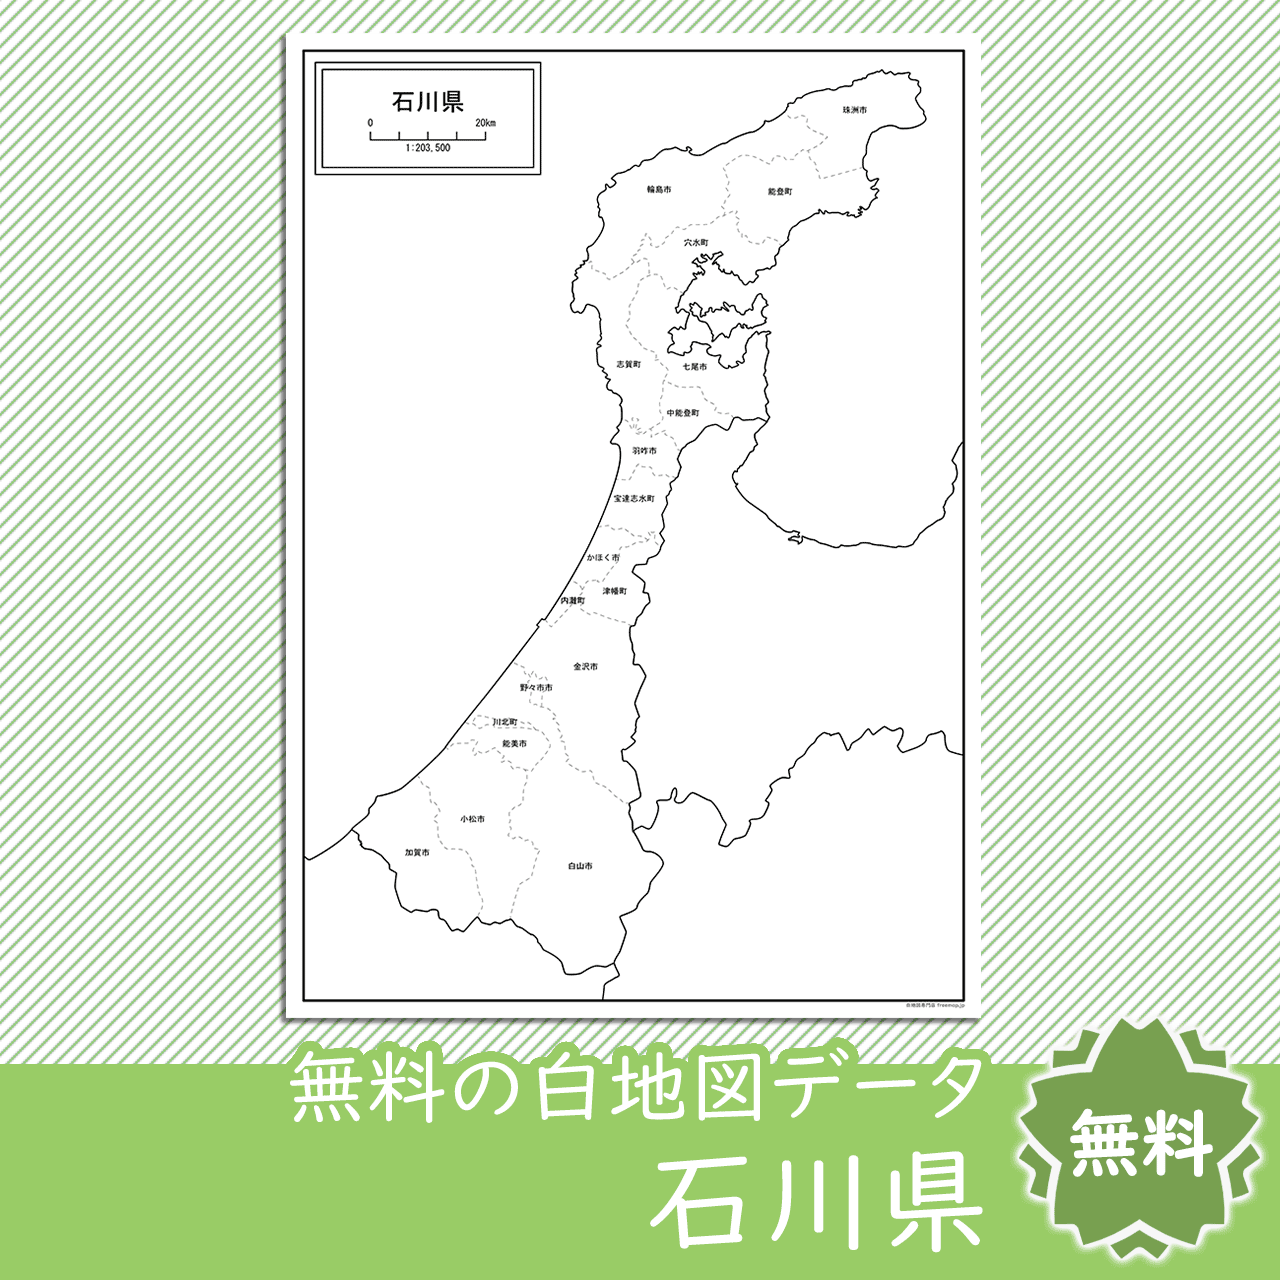 石川県の白地図を無料ダウンロードdownload ishikawa's map for free of charge.